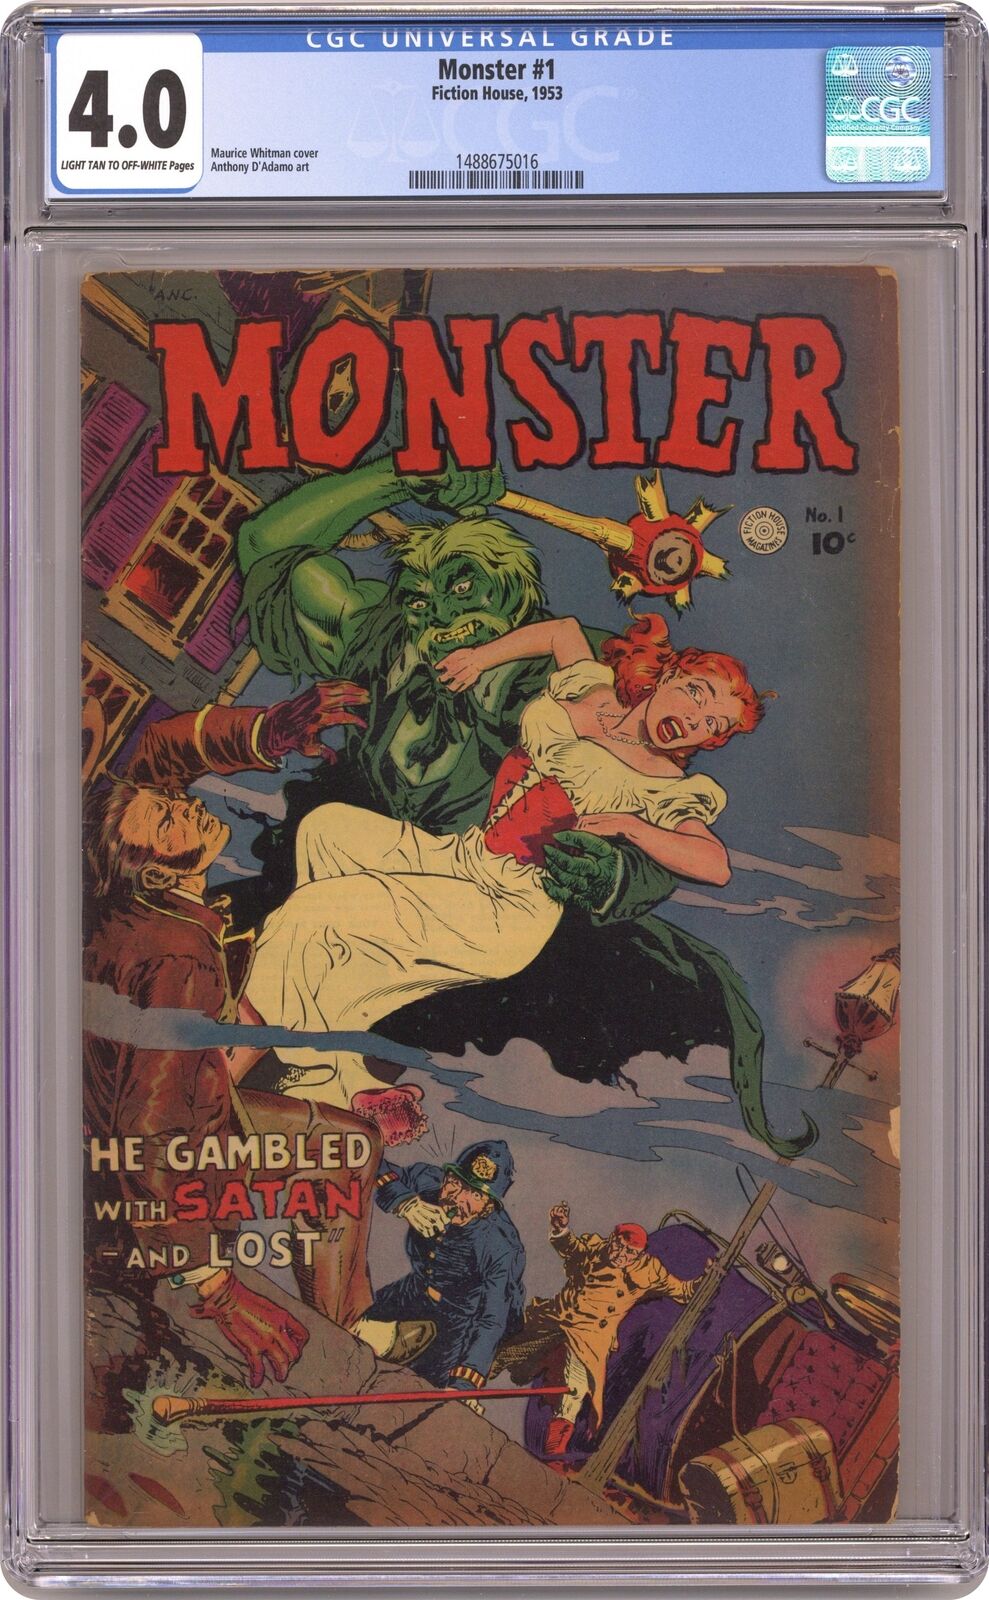 Monster #1 CGC 4.0 1953 1488675016